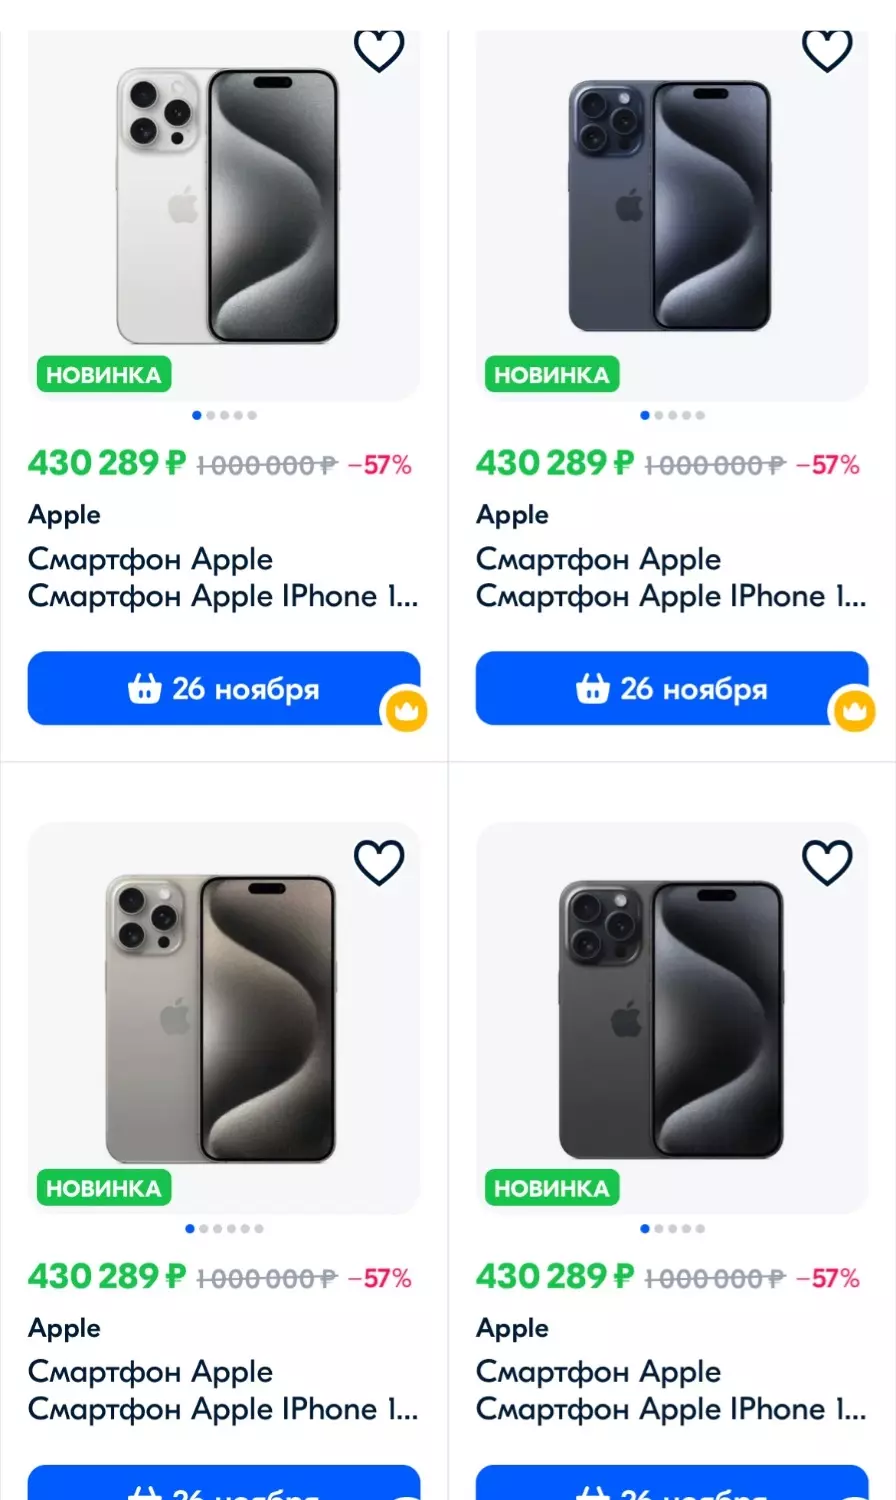 Цены на iPhone 15 на маркетплейсе